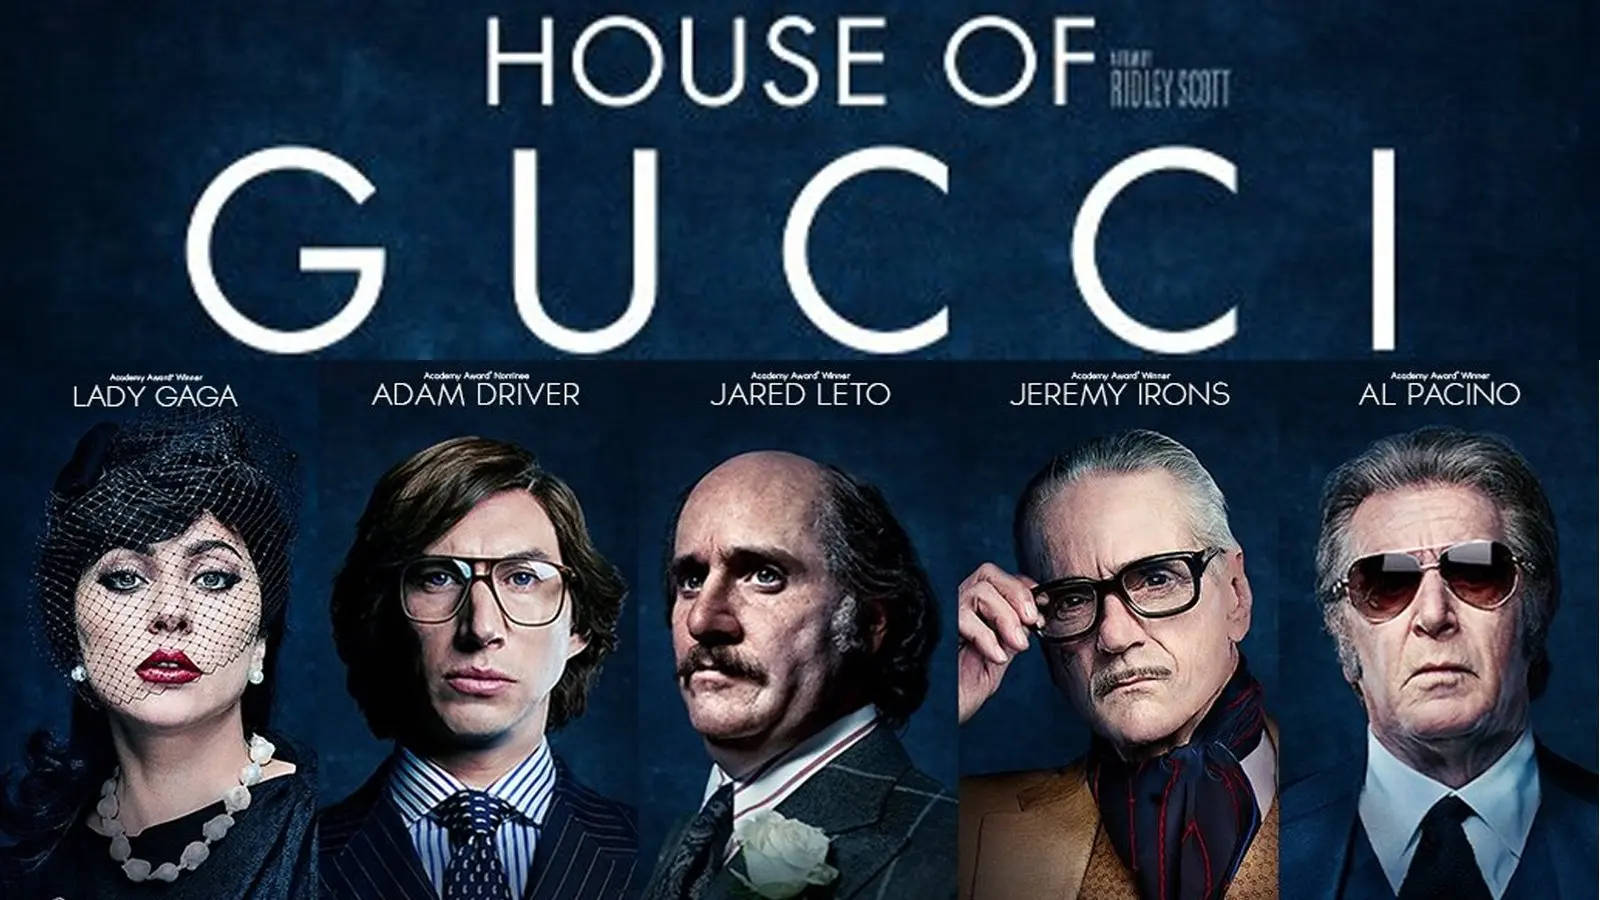 House Of Gucci Cast Portrait Wallpaper